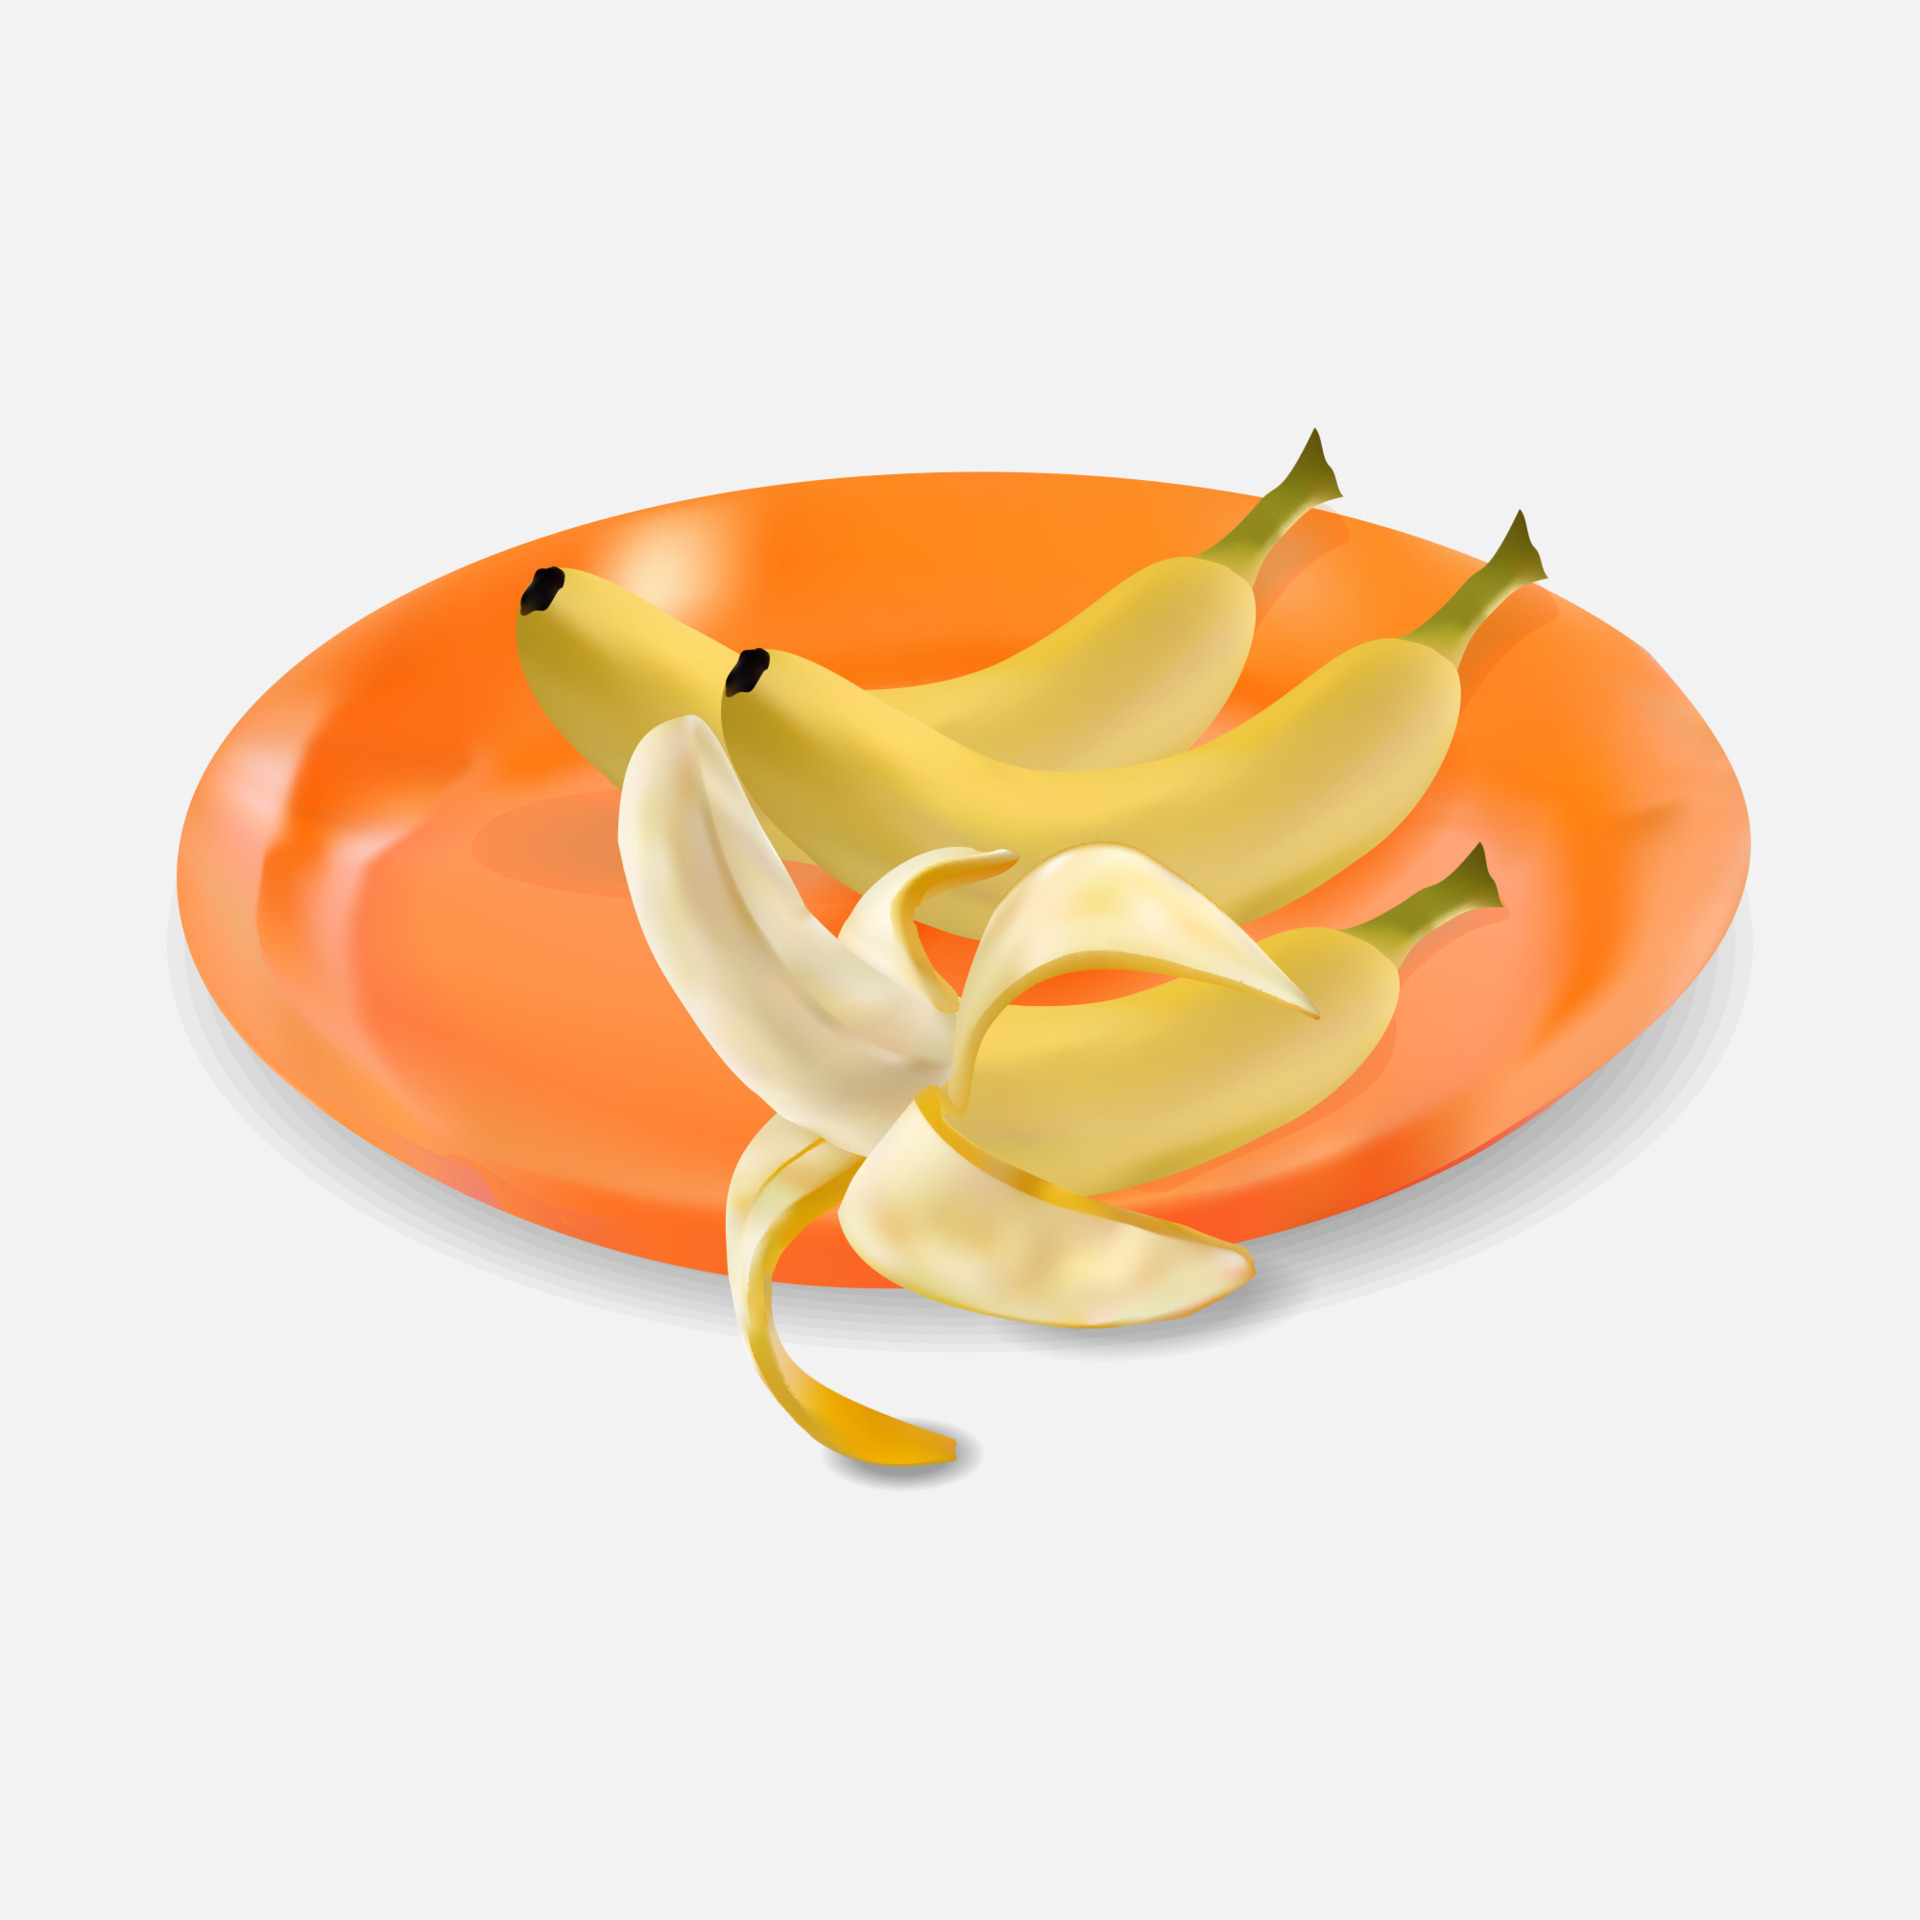 verkoudheid weer Oraal realistische banaan op een plastic bord 4272087 - Download Free Vectors,  Vector Bestanden, Ontwerpen Templates